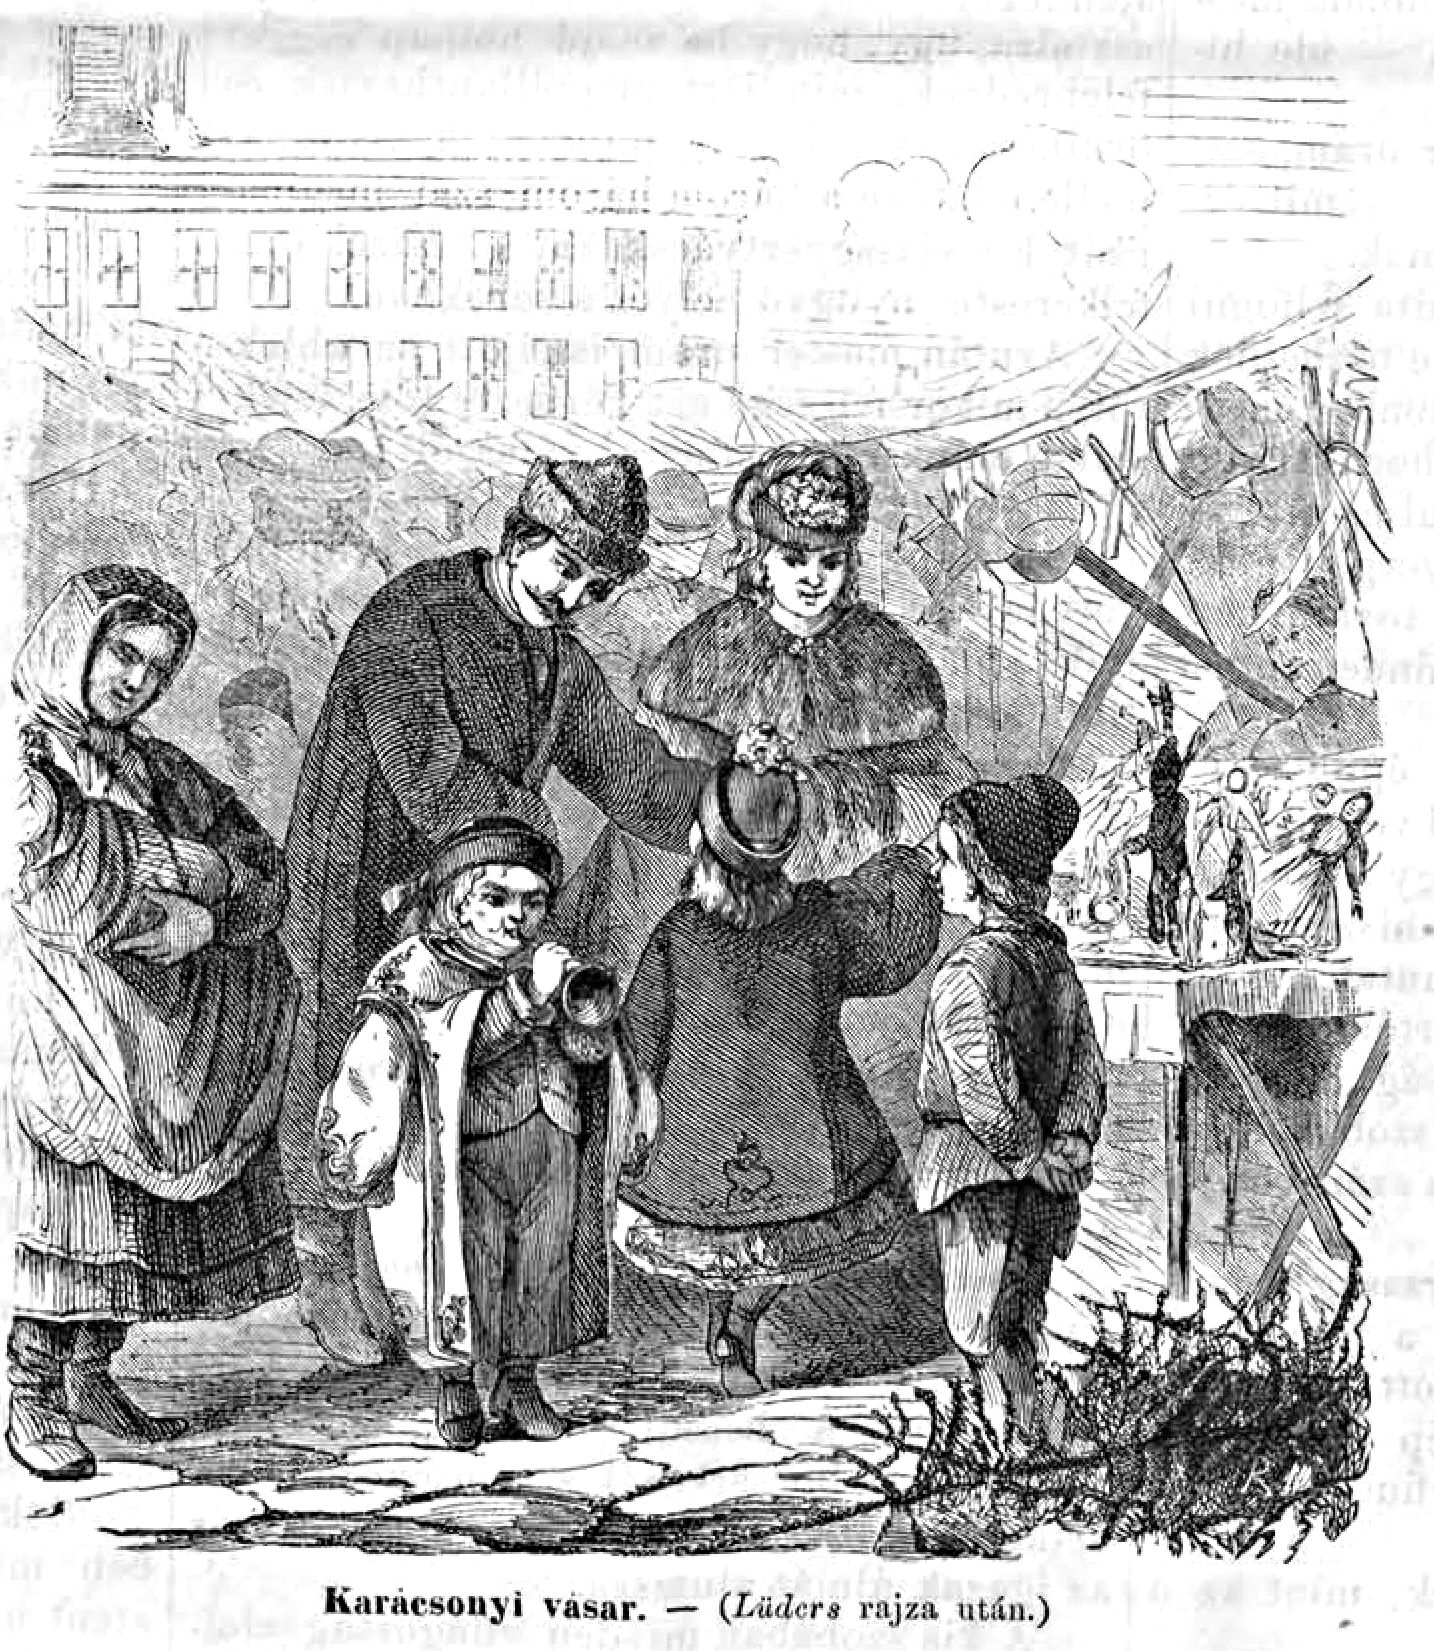 Karácsonyi vásárok, ünnepi készülődés a 19. században